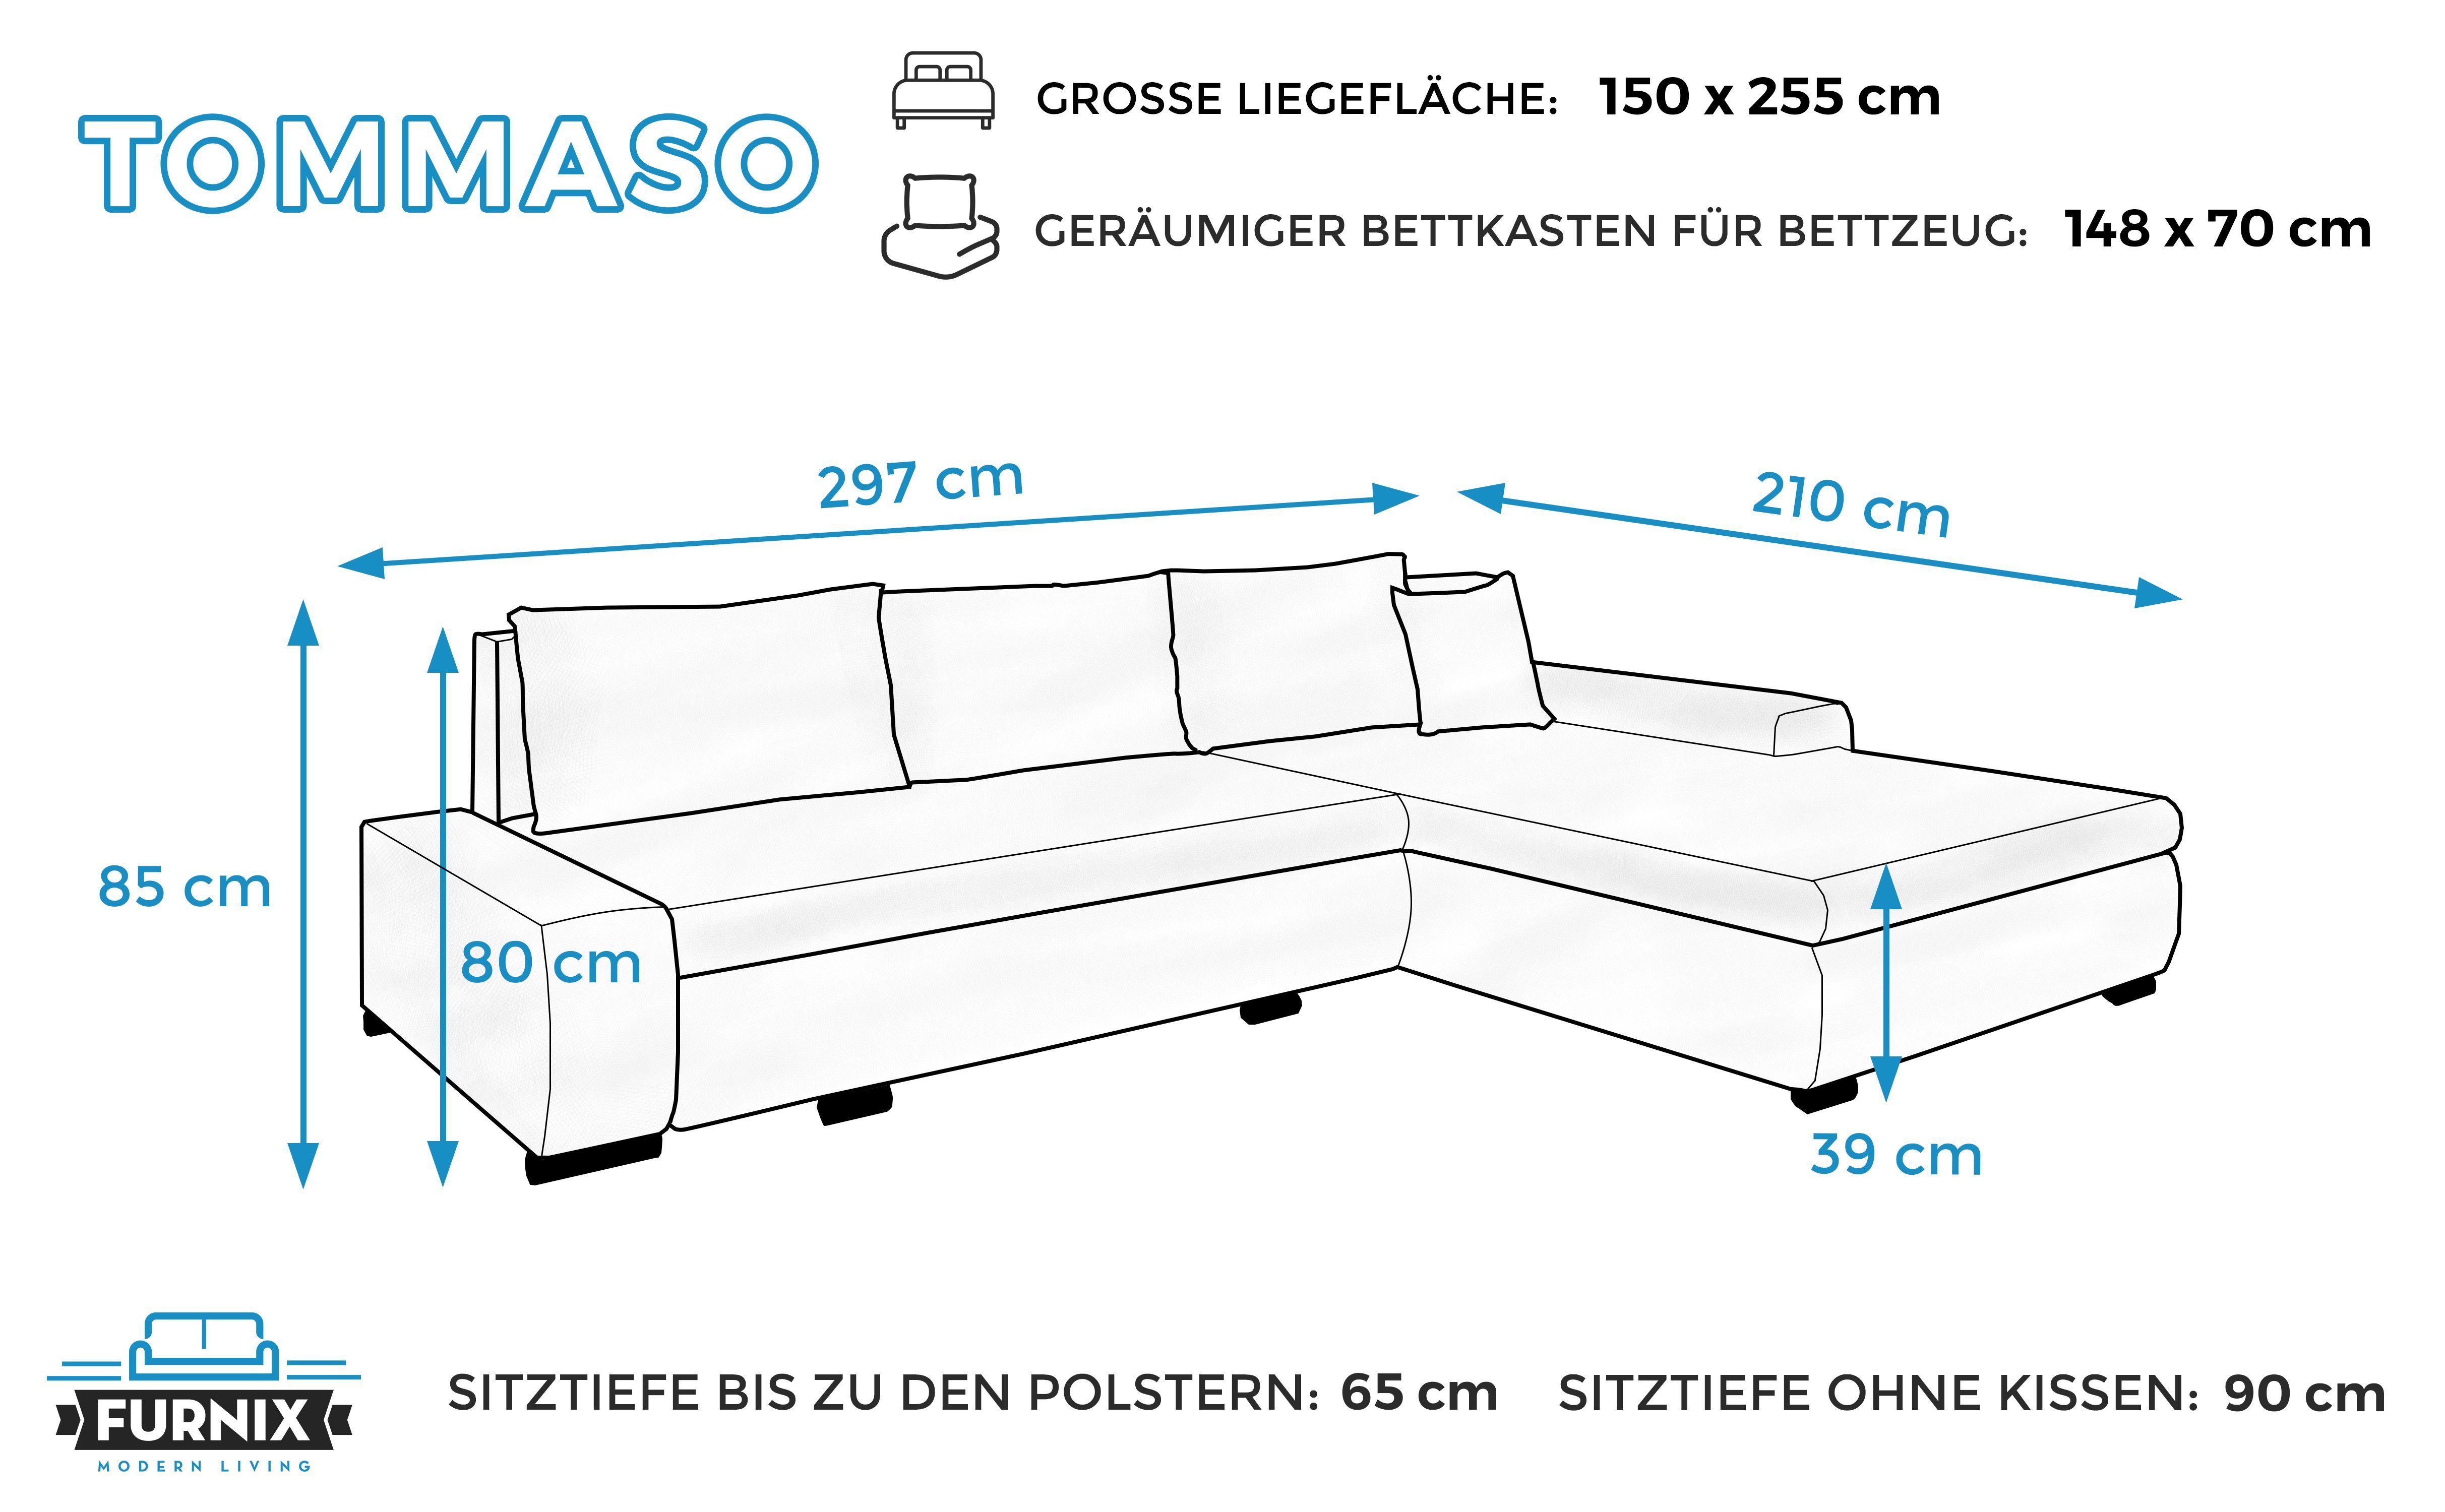 x x Sofa H85 Kissen Grau/Schwarz mit Made cm, NE10-MA1100 Couch, hochwertig, Ecksofa Bettkasten TOMMASO Schlaffunktion in EU Furnix B297 T210 Stoff/Kunstleder